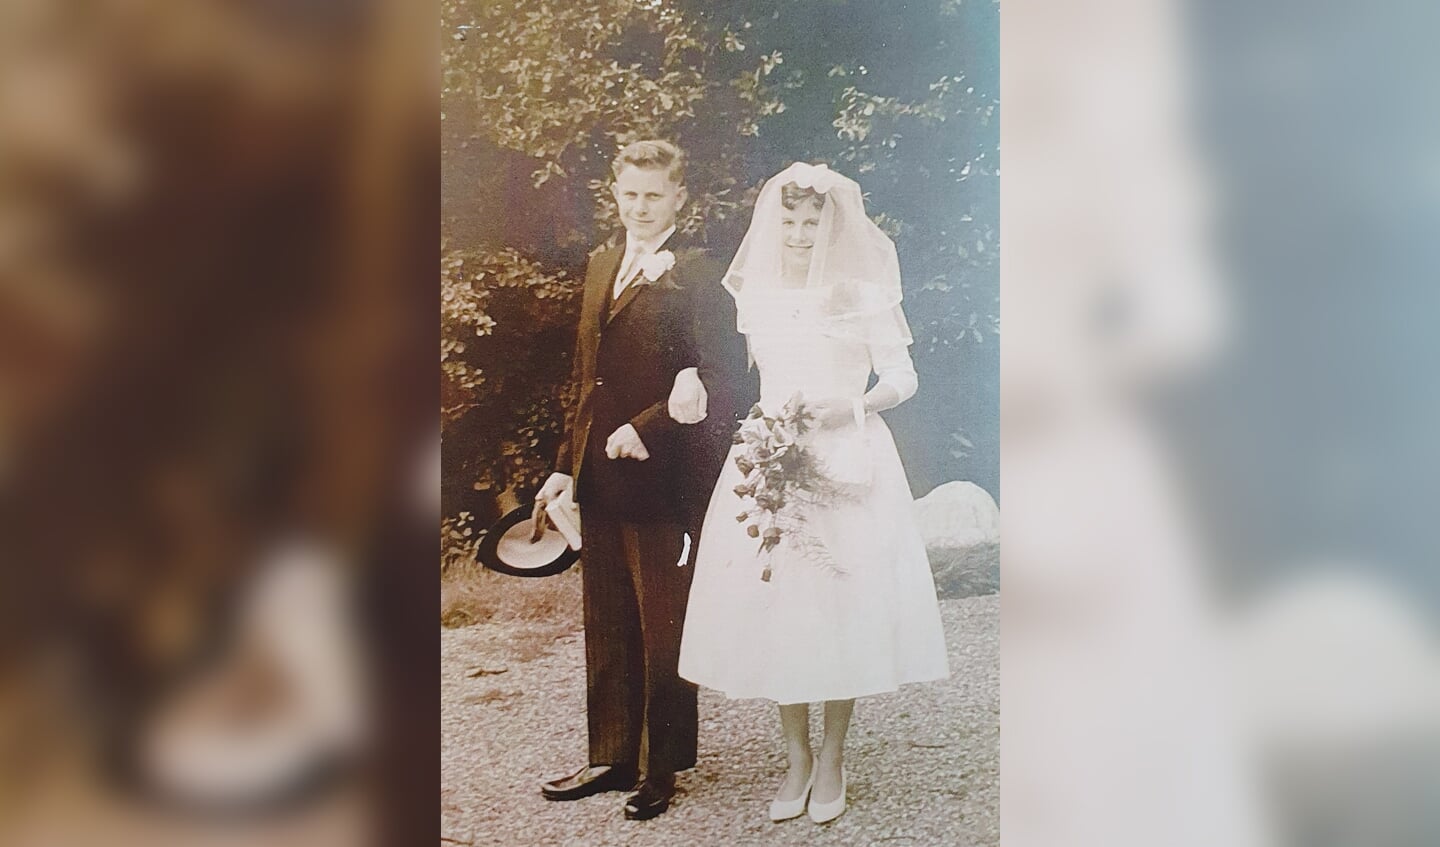 Huwelijksfoto van Gerrit en Lies Slijkhuis-Teunissen op 18 augustus 1961. Foto: PR